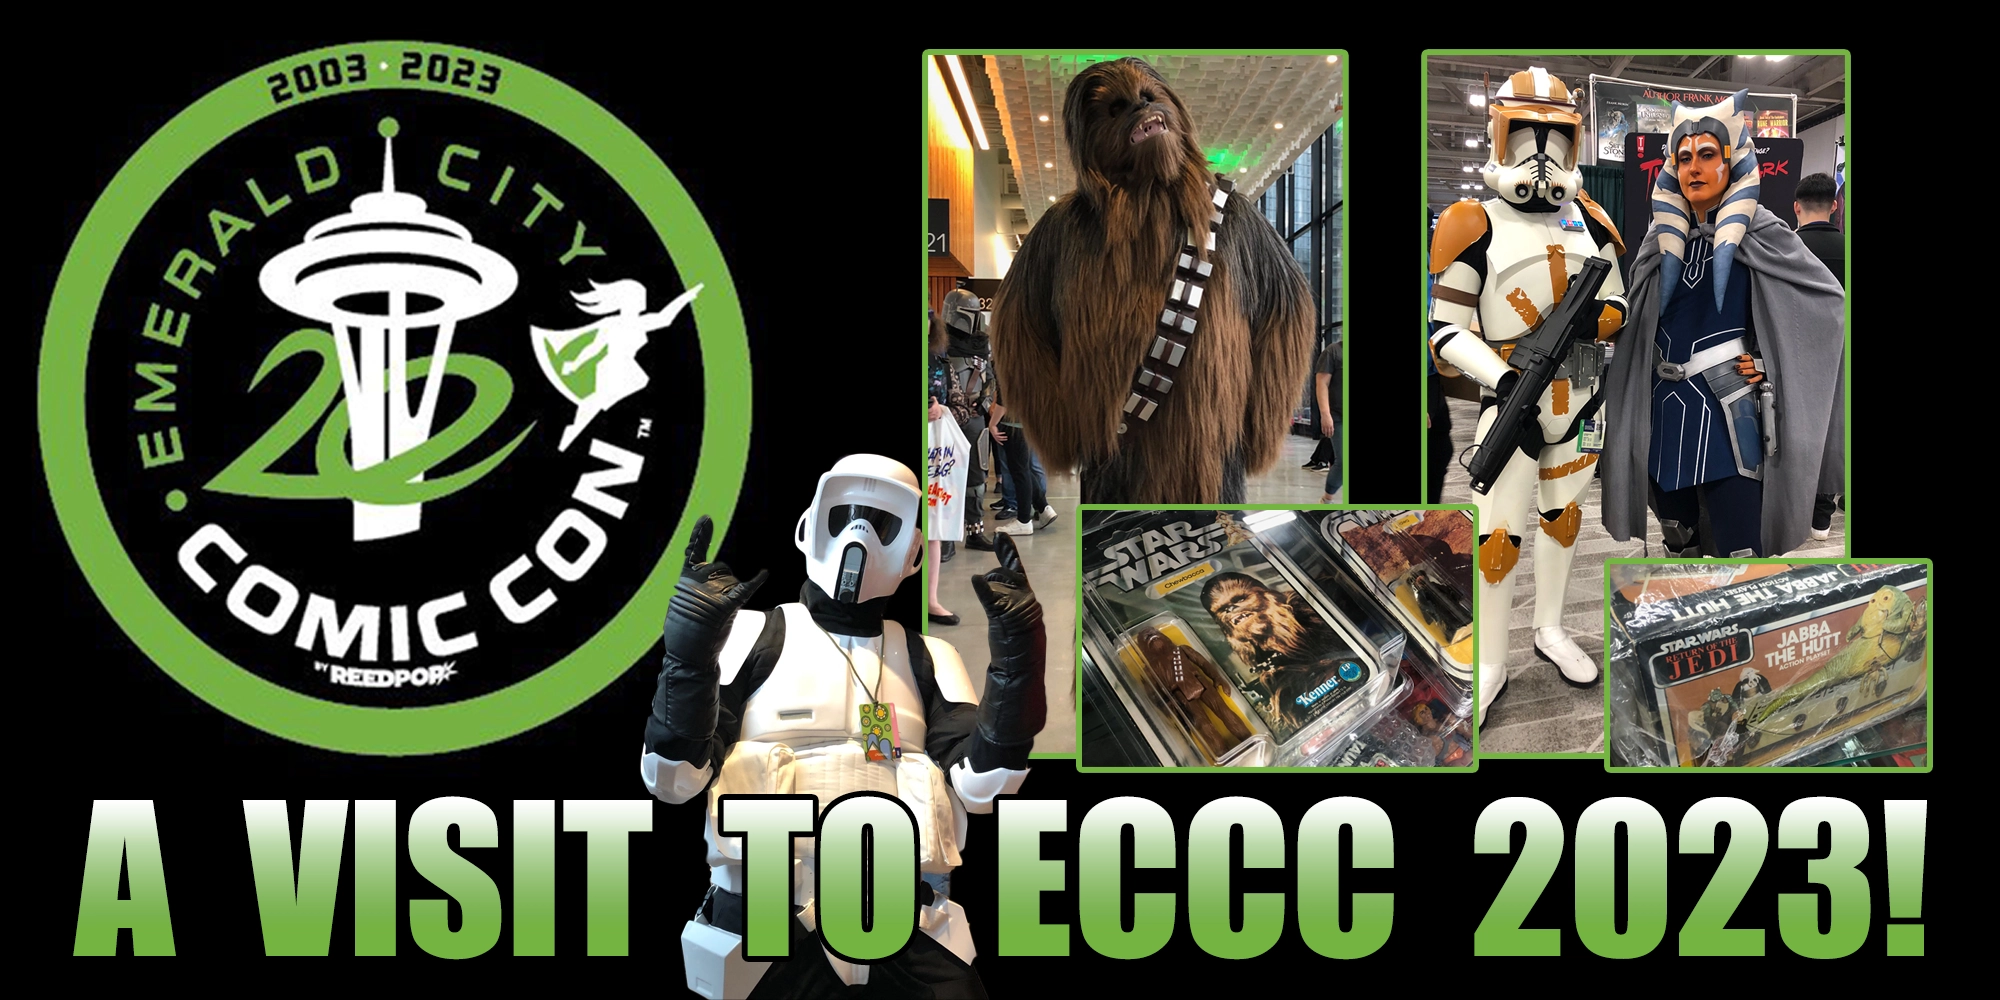 A Visit To Emerald City Comic Con 2023!